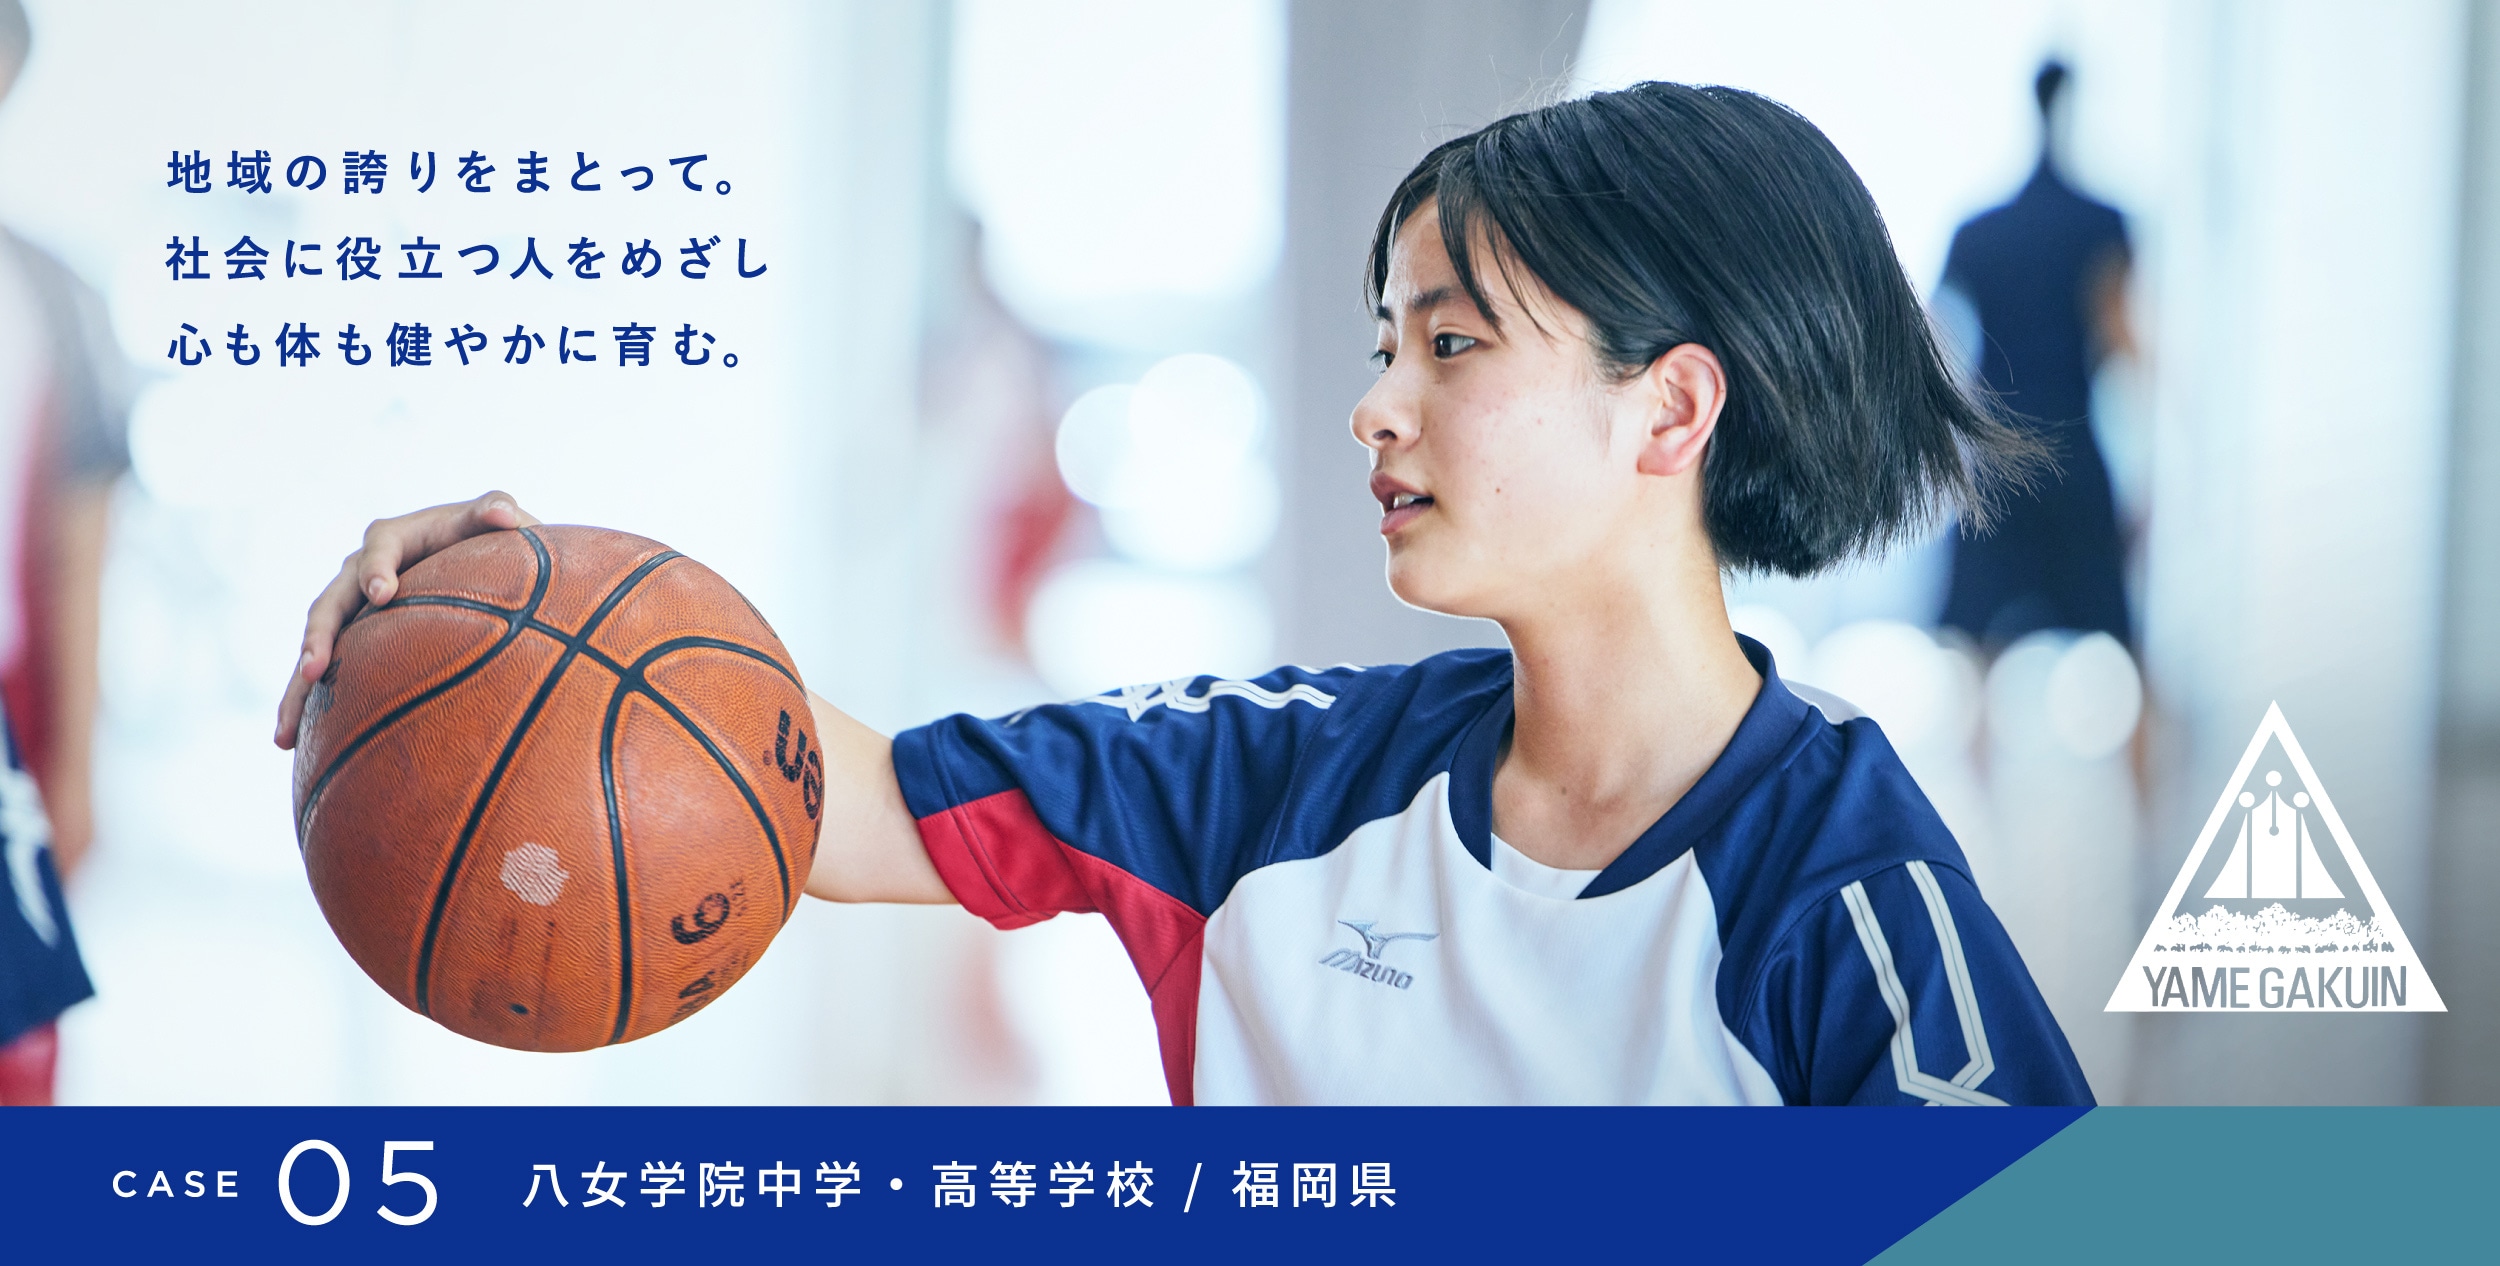 CASE 05 八女学院中学・高等学校／福岡県　地域の誇りをまとって。社会に役立つ人をめざし心も体も健やかに育む。